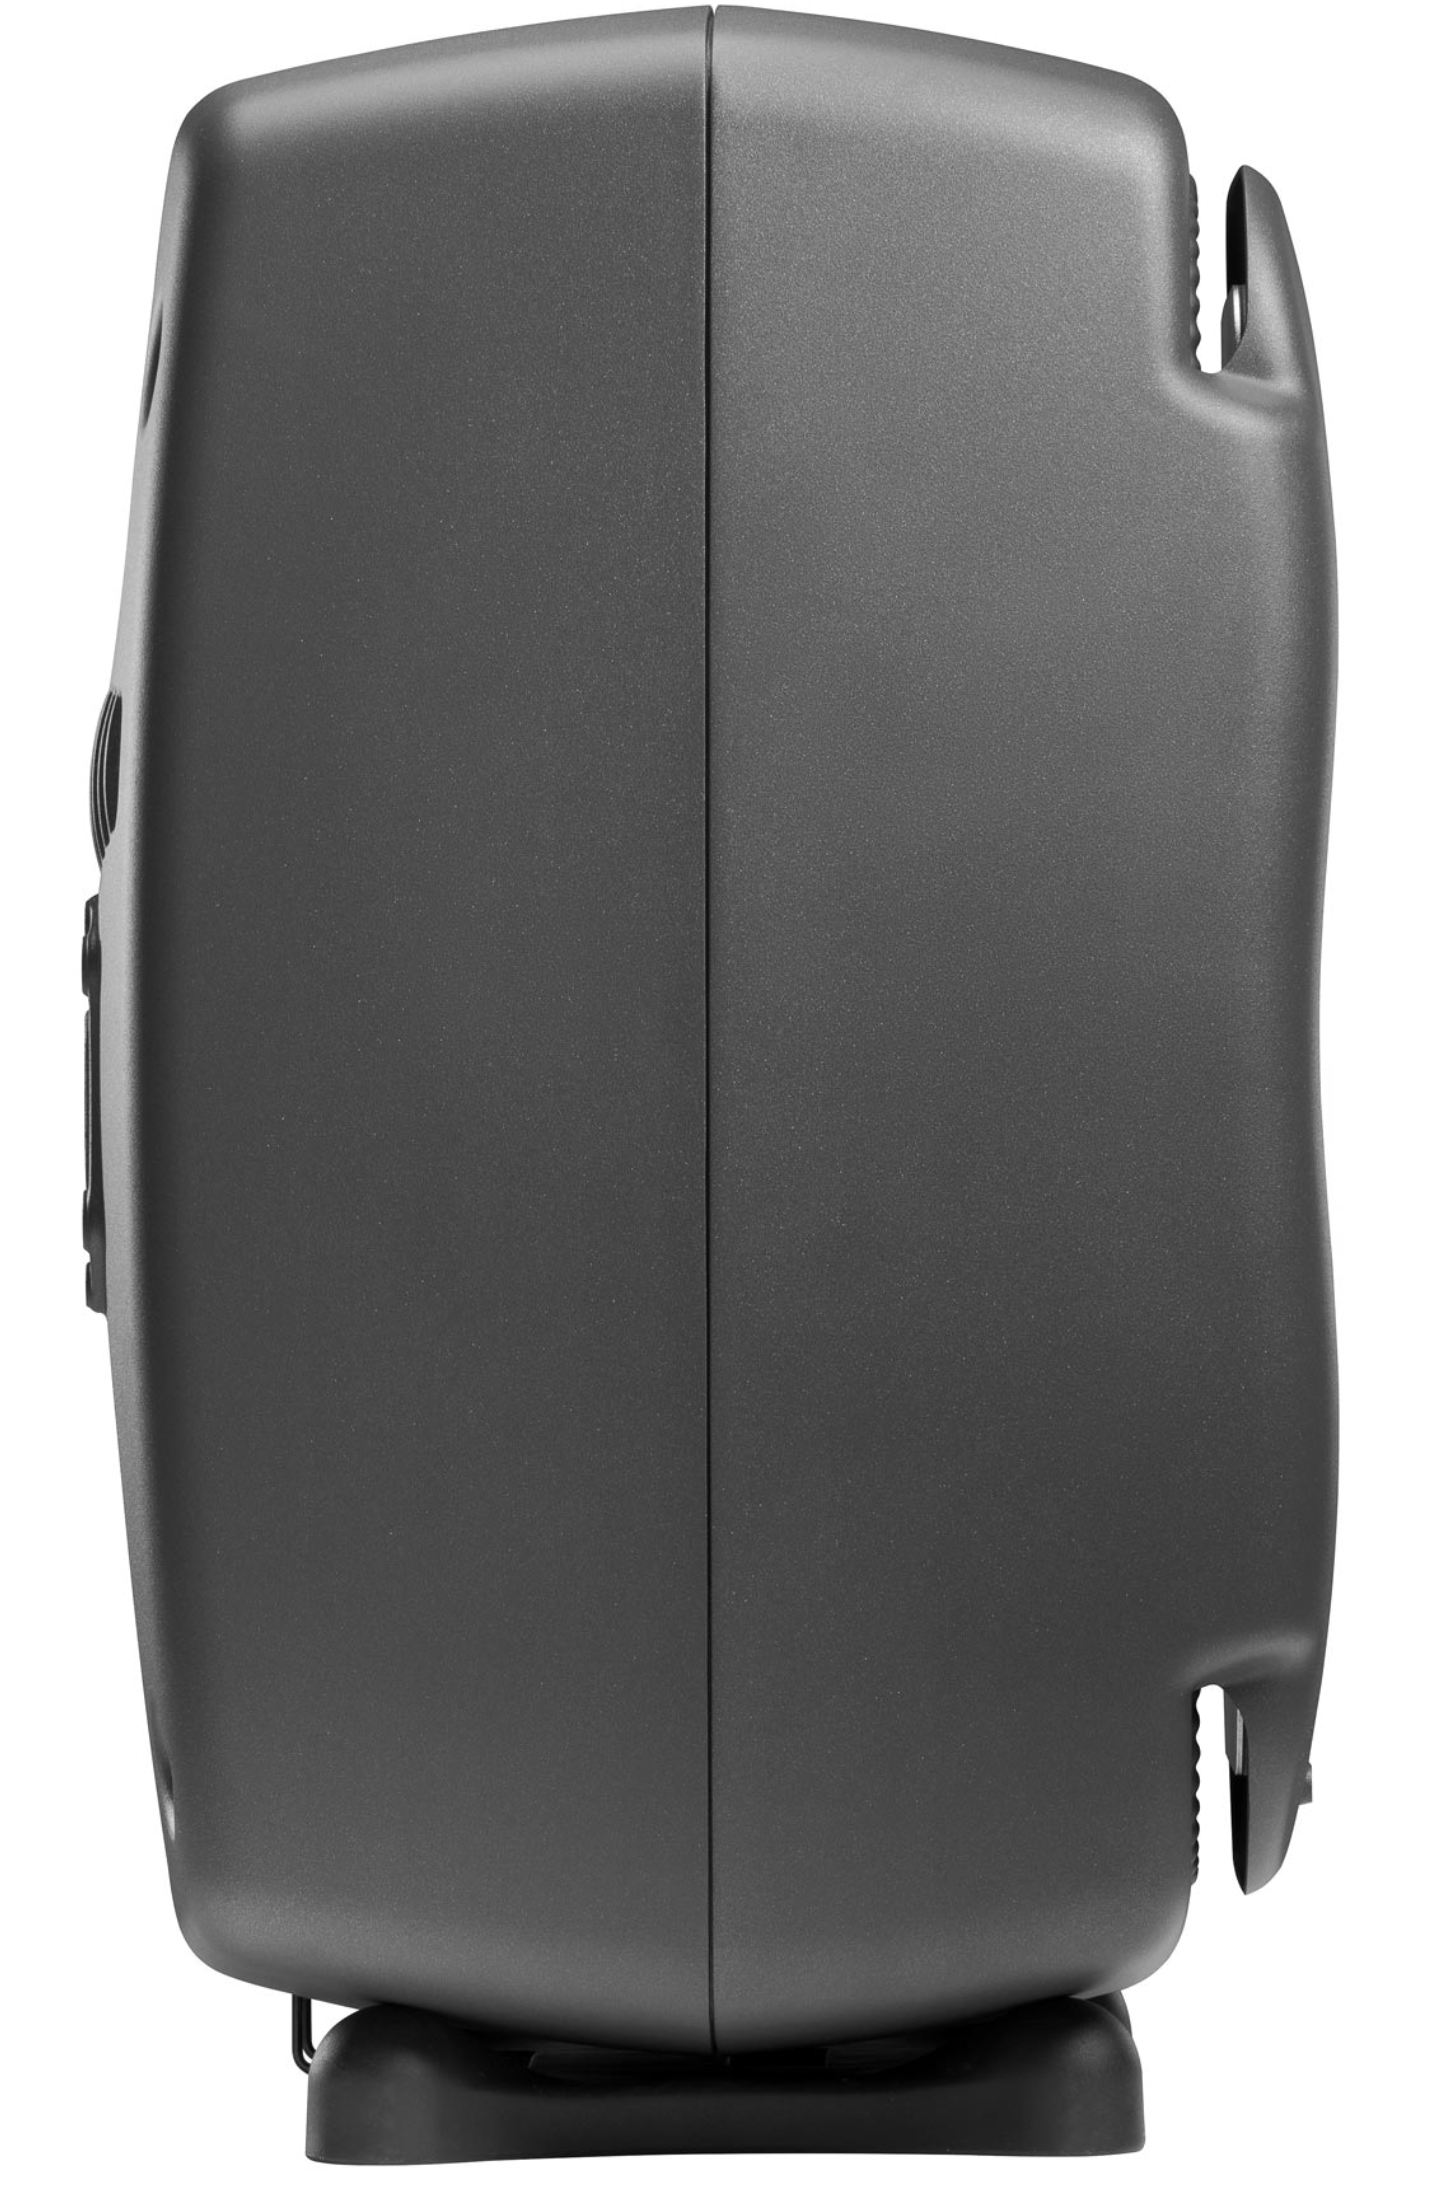 Genelec 8361A SAM Studio Monitors in dark gray.  Profile image